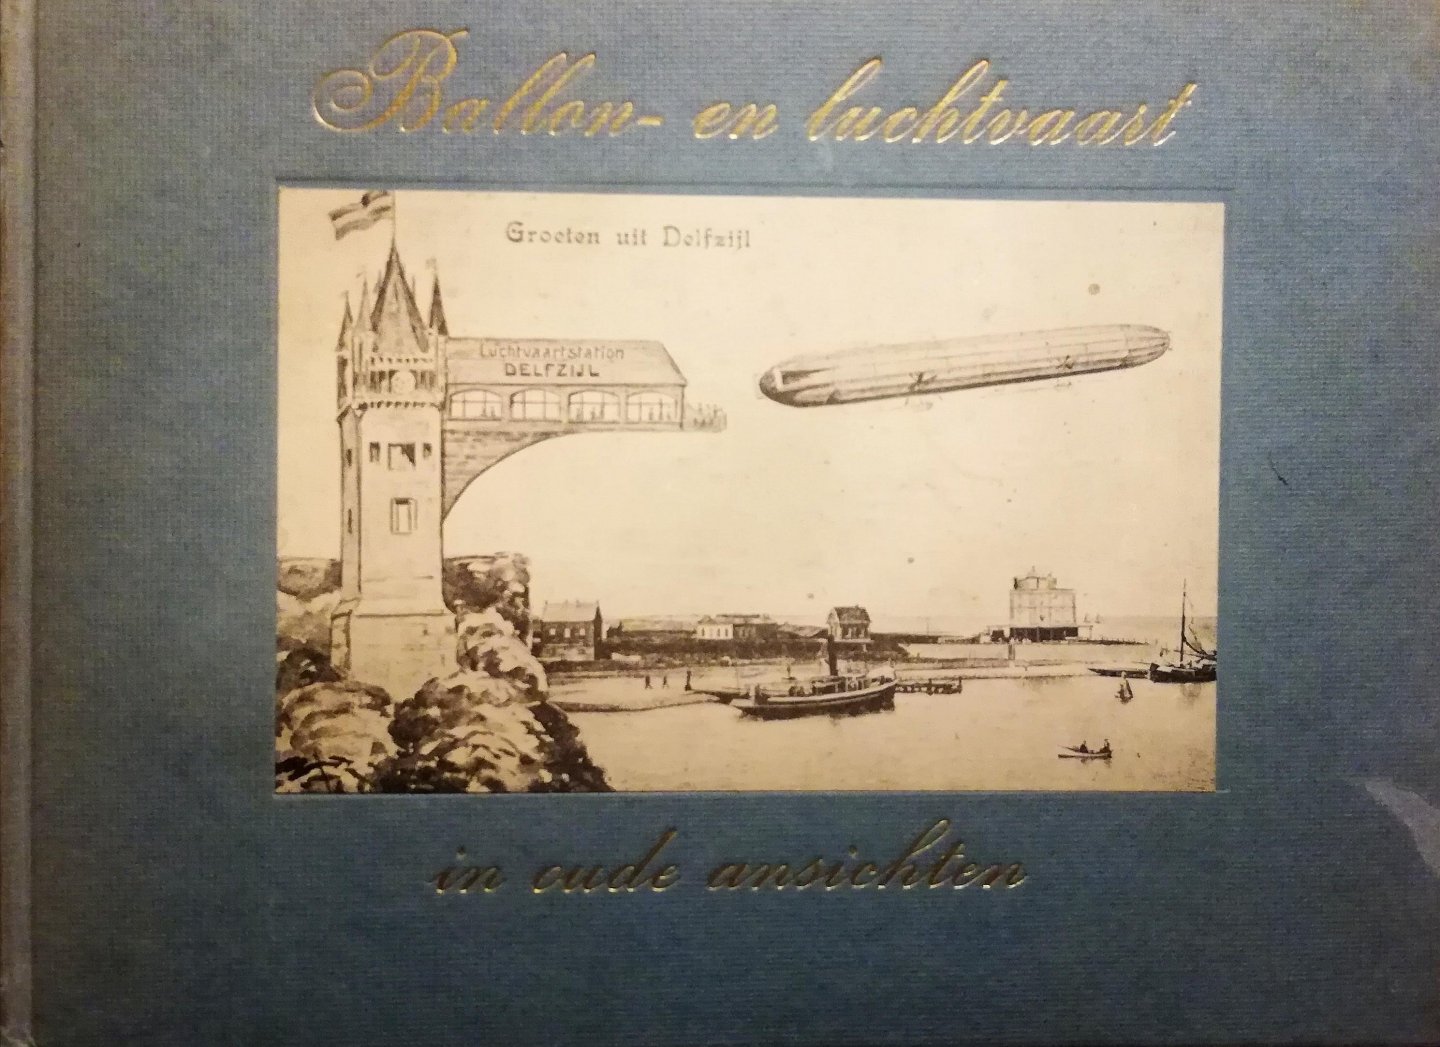 Smit , A. L. M.  [ ISBN   ]  4419 ( Veel krantenknipsels bijgevoegd van de Uiver en de Graf Zeppelin en een oude Engelse ansichtkaart van een Bristol airplane "Babe" . Zie foto . ) - Ballon- en  luchtvaart in Oude Ansichten deel 1 . ( Waarin afbeeldingen van ballonvaartuigen en vliegtuigen van vroeger . ) Geillustreerd met ansichten en foto`s .